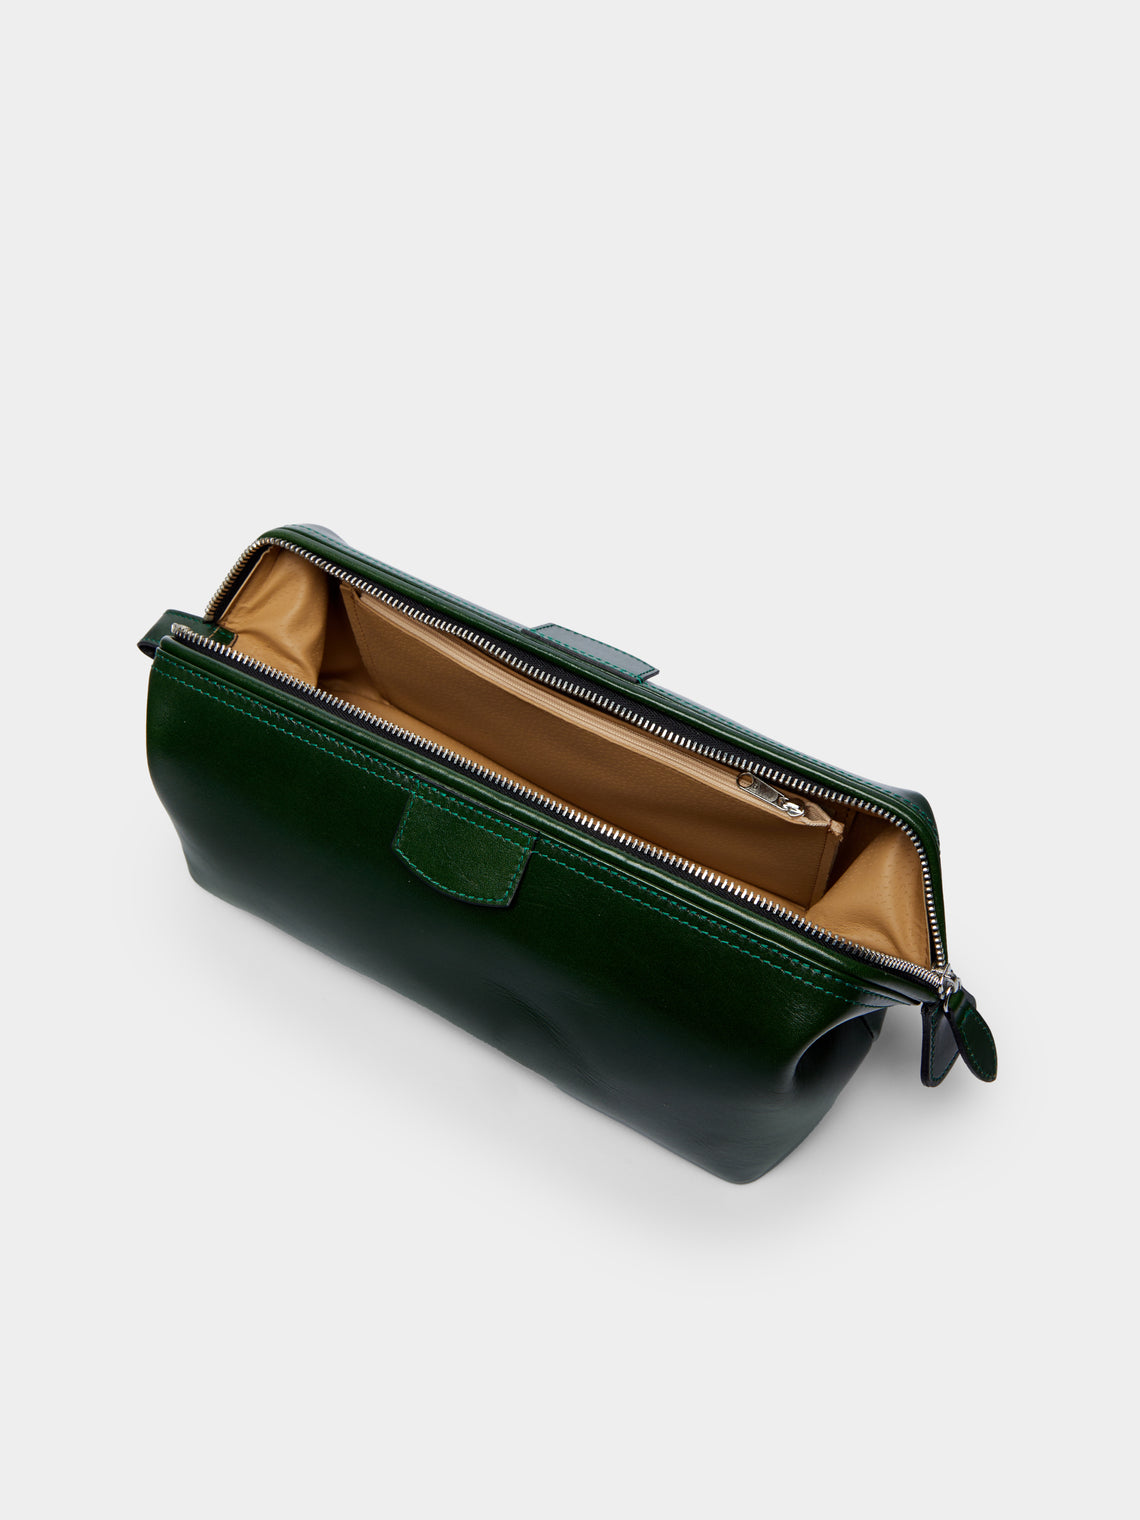 F. Hammann - Leather Medium Wash Bag -  - ABASK